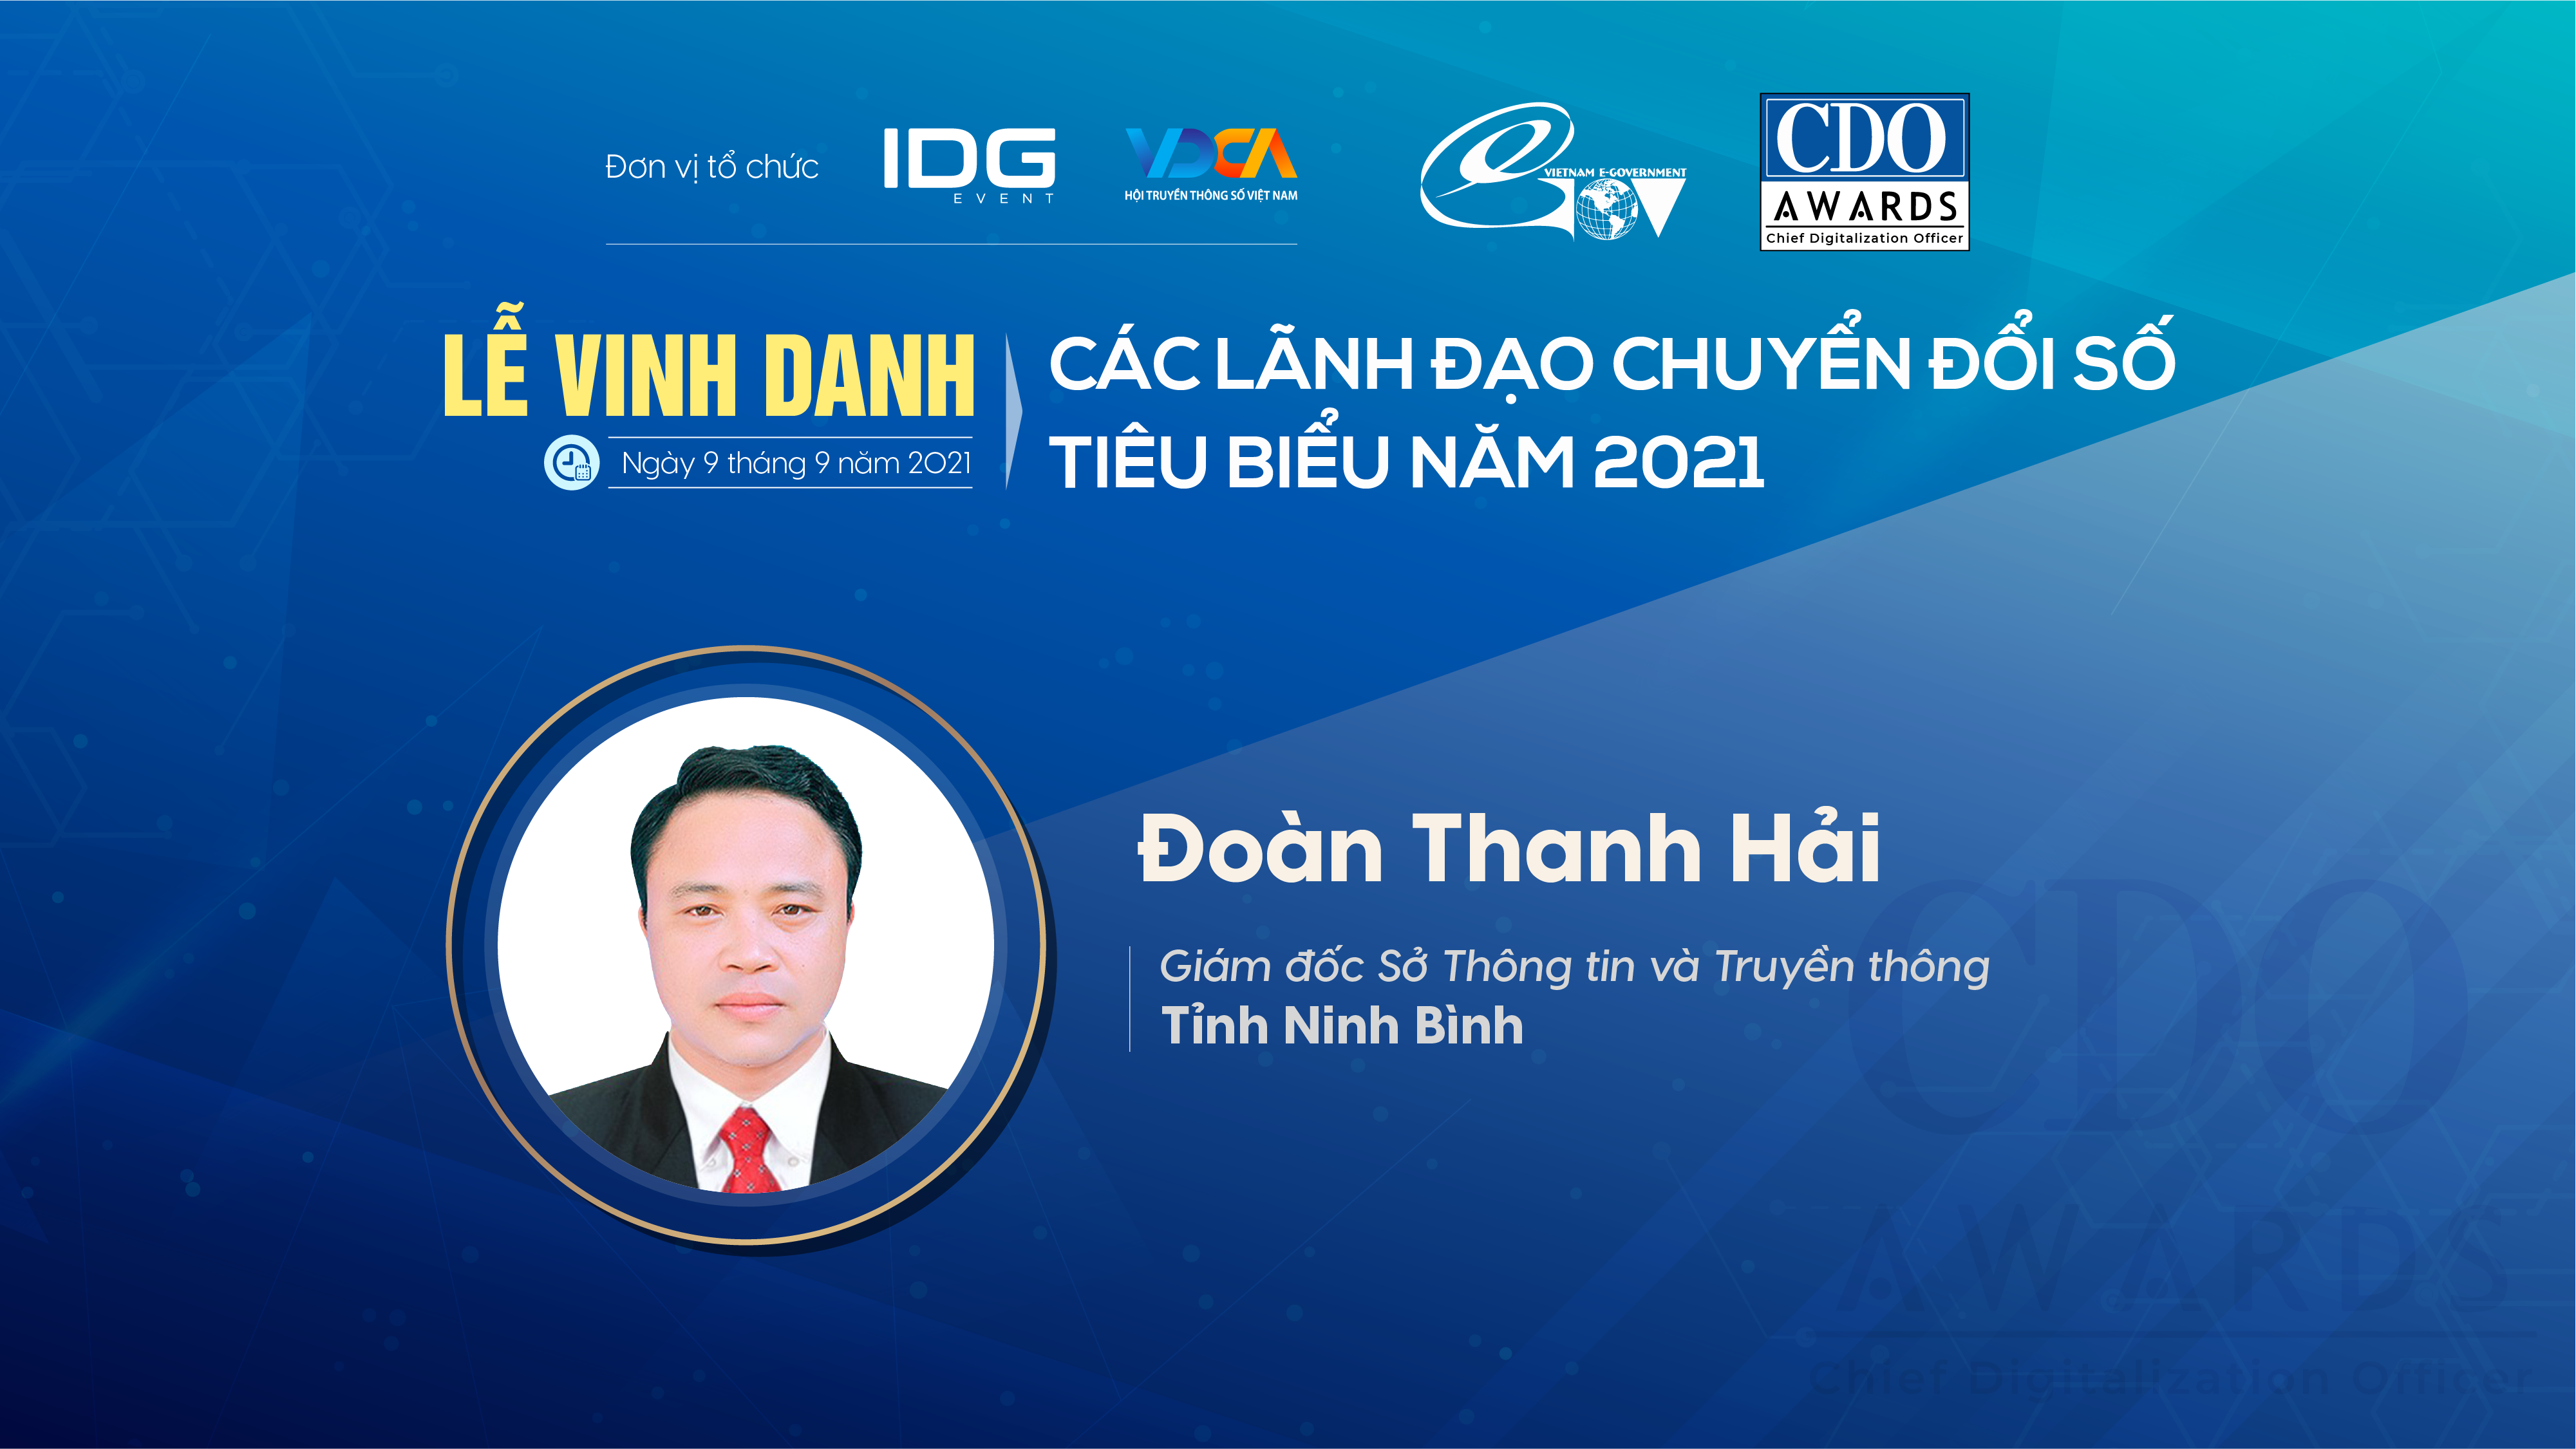 Giám đốc Sở Thông tin và Truyền thông Ninh Bình được vinh danh Lãnh đạo chuyển đổi số tiêu biểu năm 2021